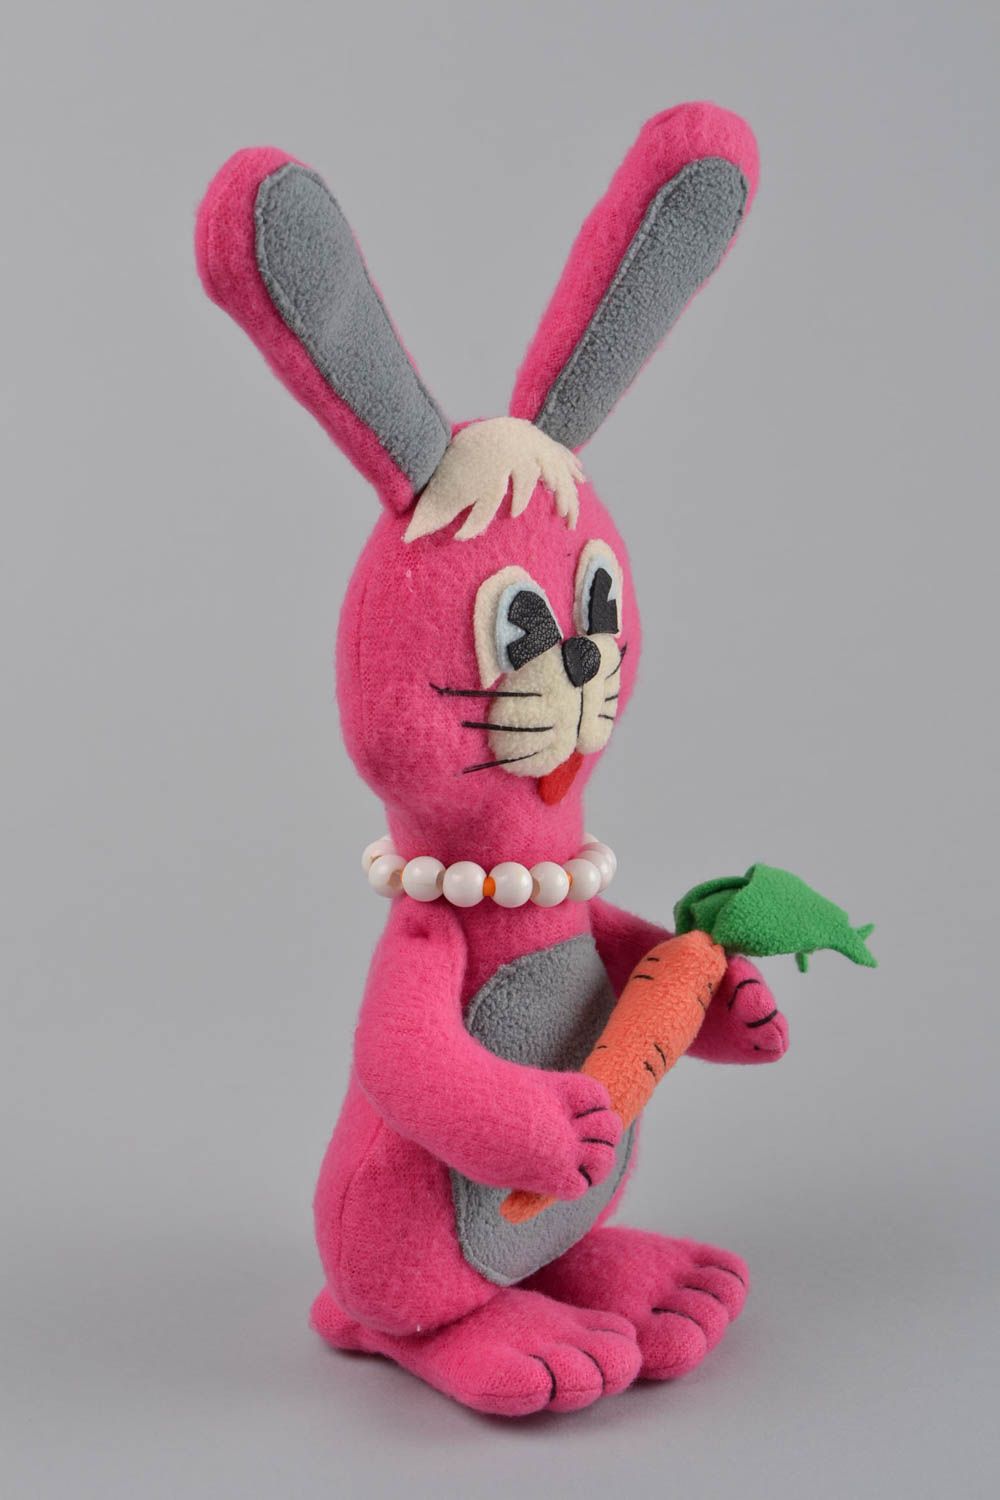 Rosa handmade Kuscheltier Hase aus Fleece für Kinder originell schön Geschenk foto 3